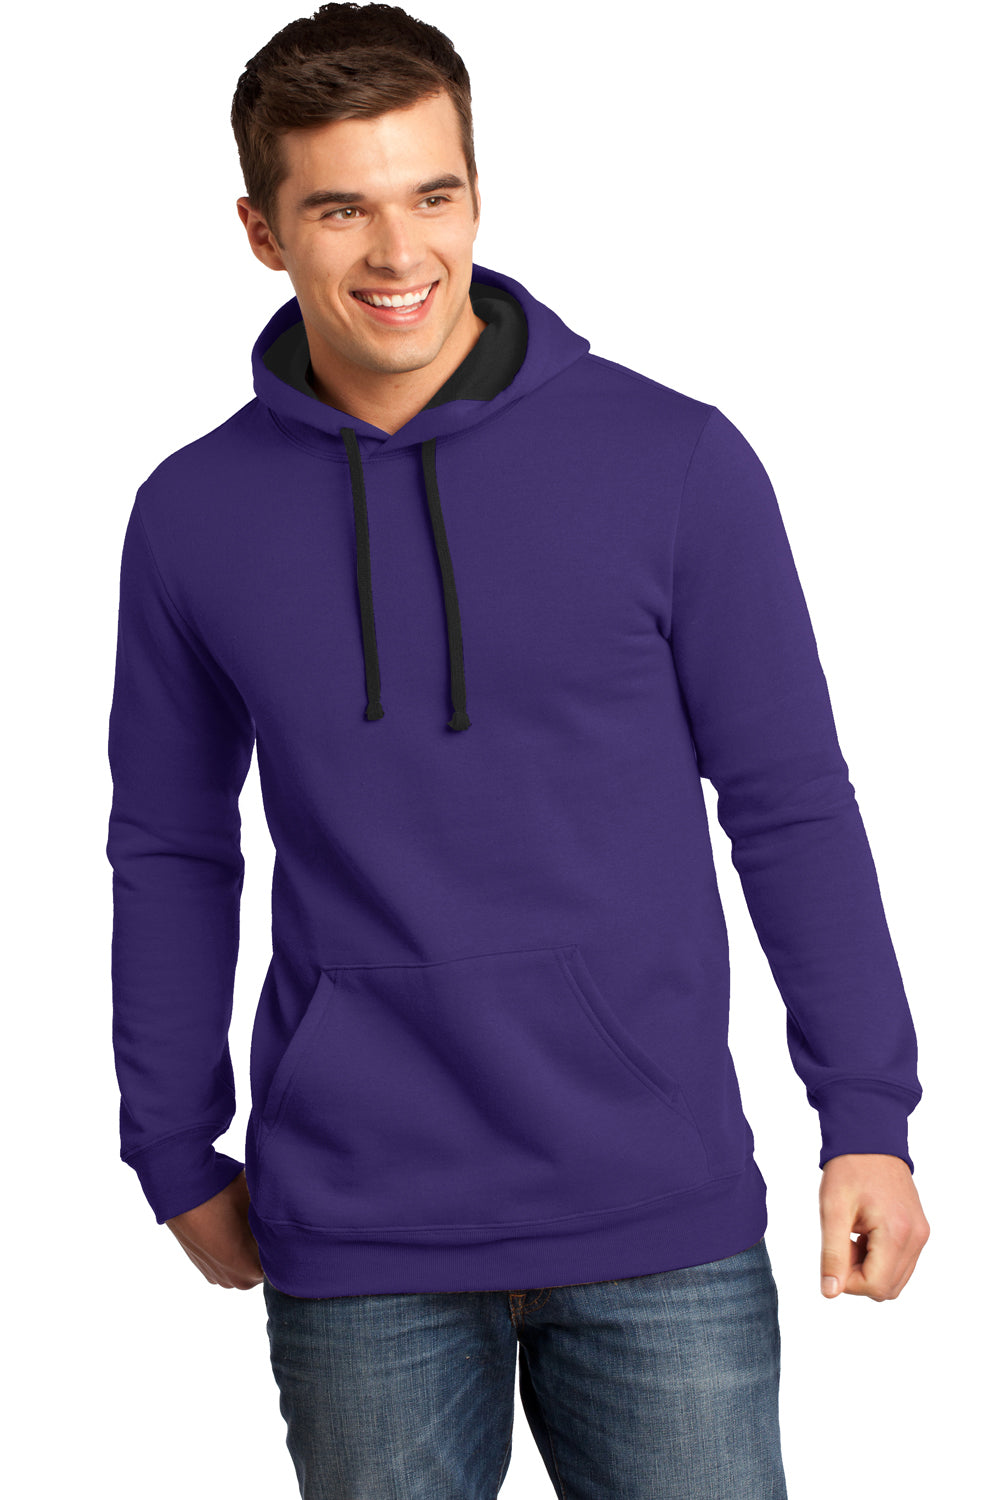 District DT810 Mens The Concert Fleece Hooded Sweatshirt Hoodie Purple Front